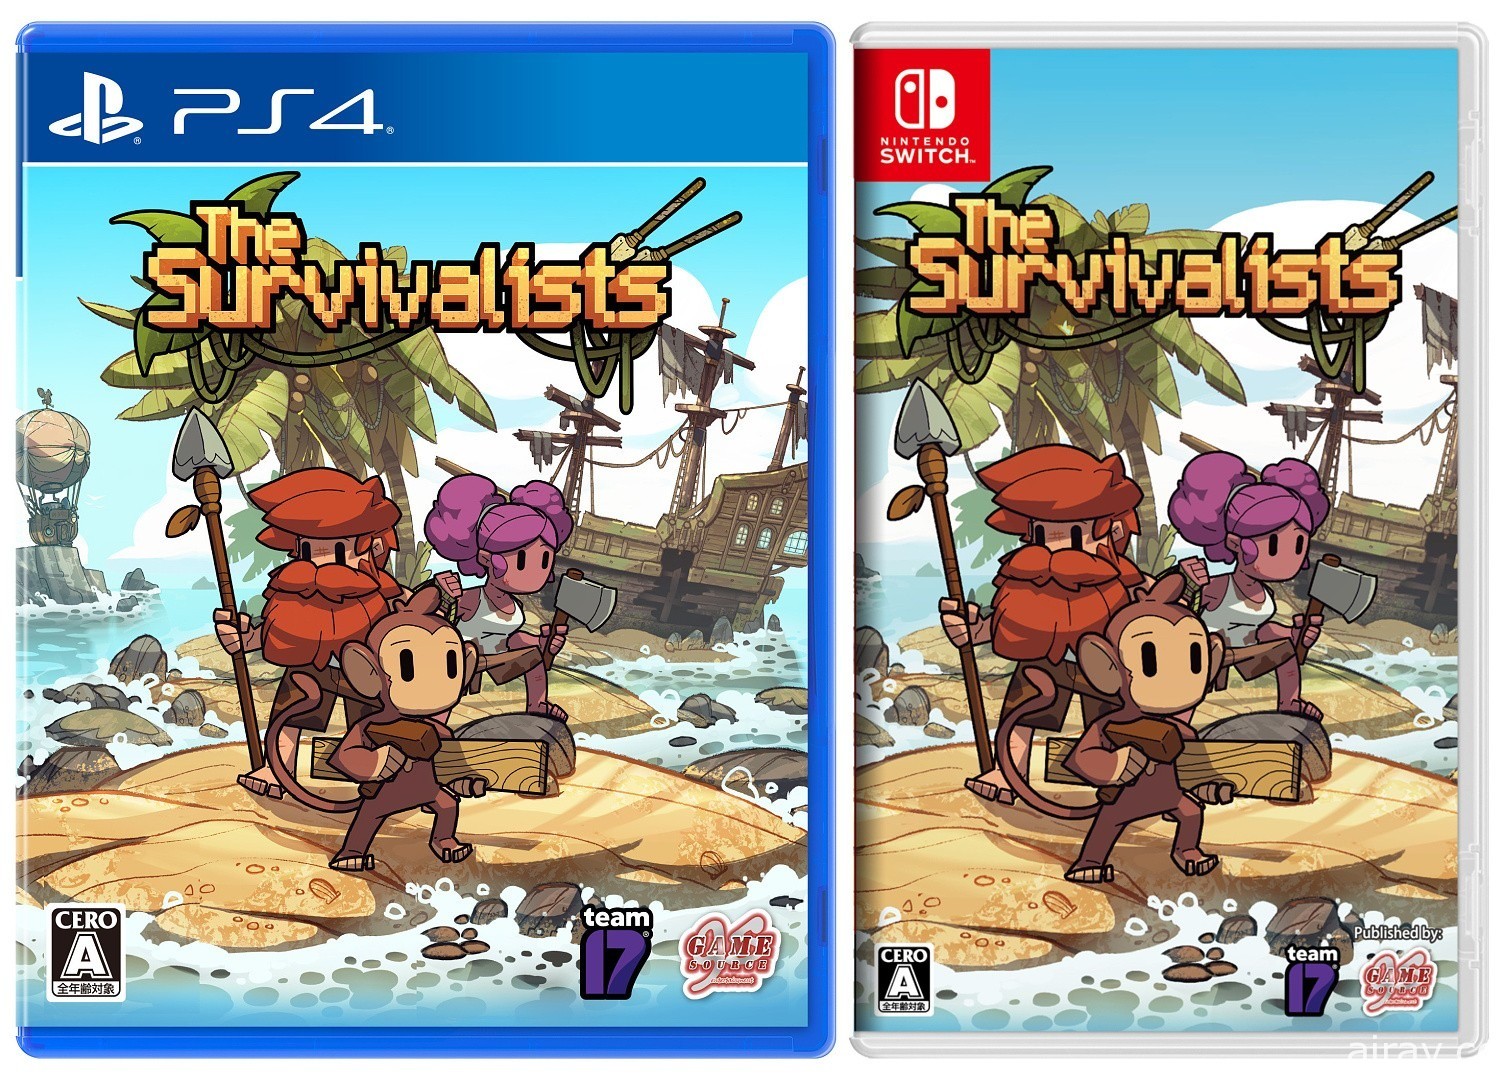 沙盒生存游戏《岛屿生存者》已发售、释出上市宣传影片　PS4 盒装版 10 月 29 日推出